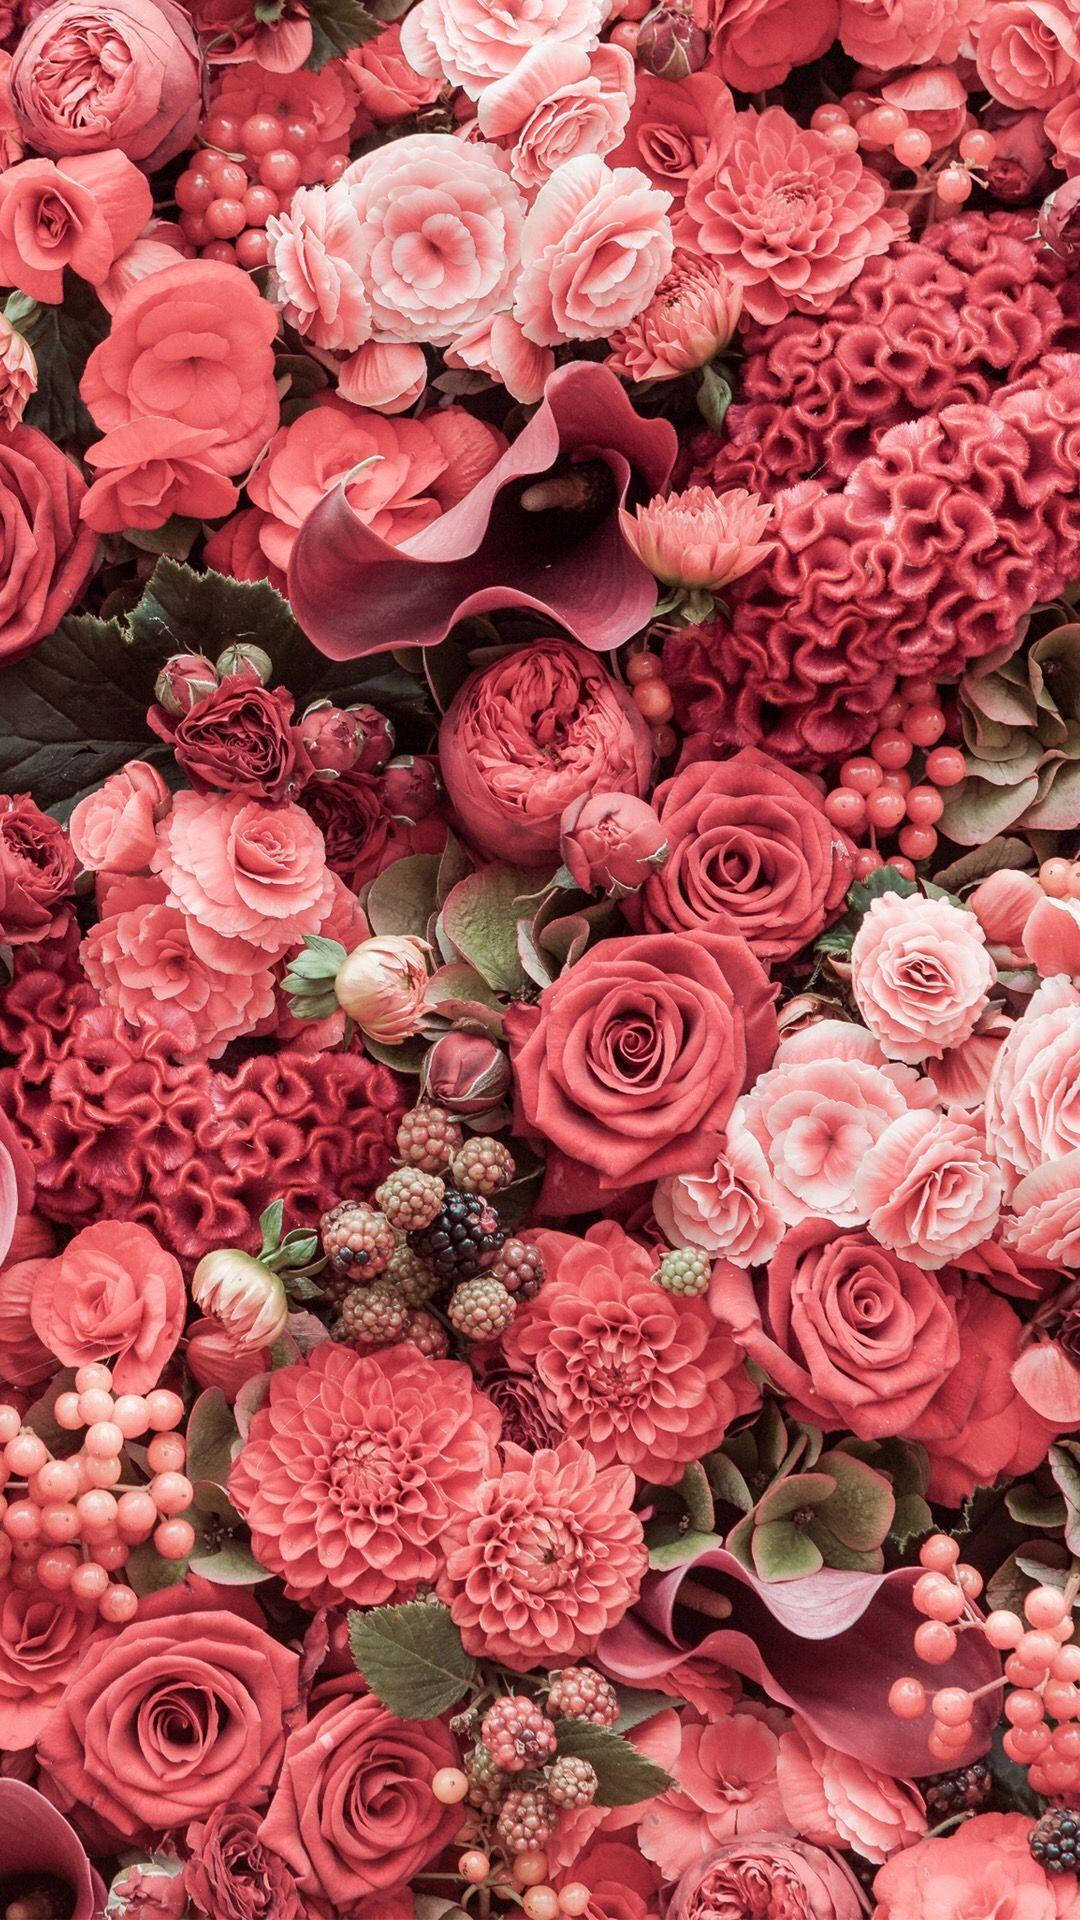 Hãy chiêm ngưỡng bông hồng màu hồng tươi tắn với sắc hương tinh khôi, sự mềm mại của từng cánh hoa cùng vẻ đẹp đầy sức sống của chúng. Hãy để cho màu hồng tươi sáng này thắp lên trong bạn một tình yêu và sự lãng mạn. Bức ảnh này chắc chắn sẽ đem đến cho bạn trải nghiệm tuyệt vời!